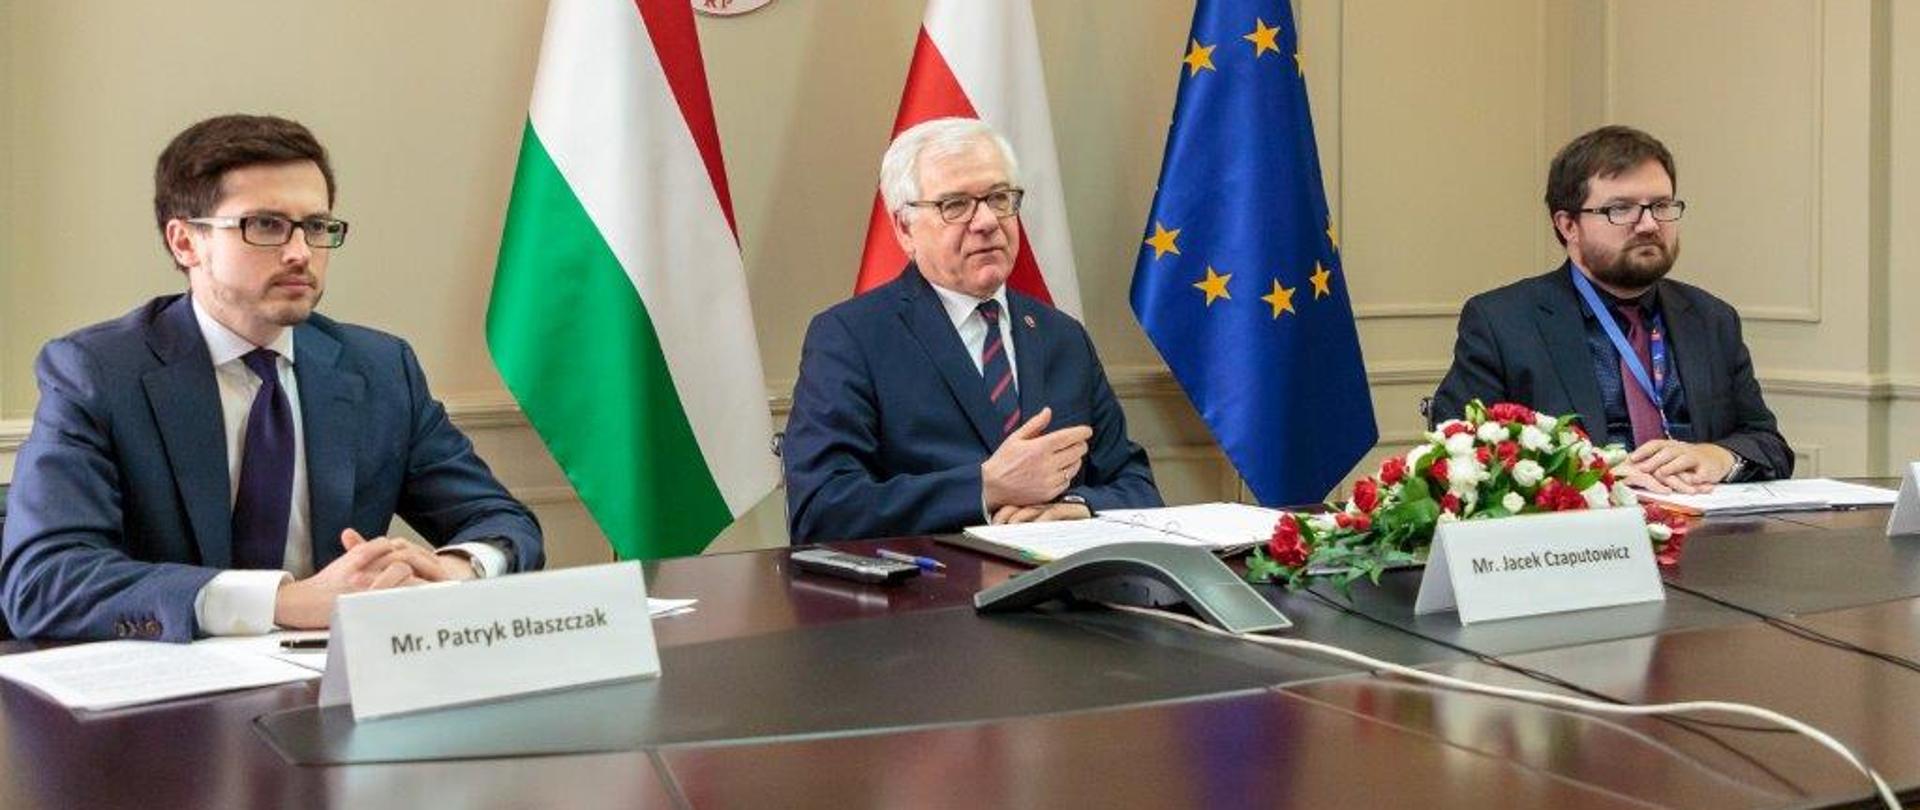 Wideokonferencja ministrów spraw zagranicznych Polski i Węgier